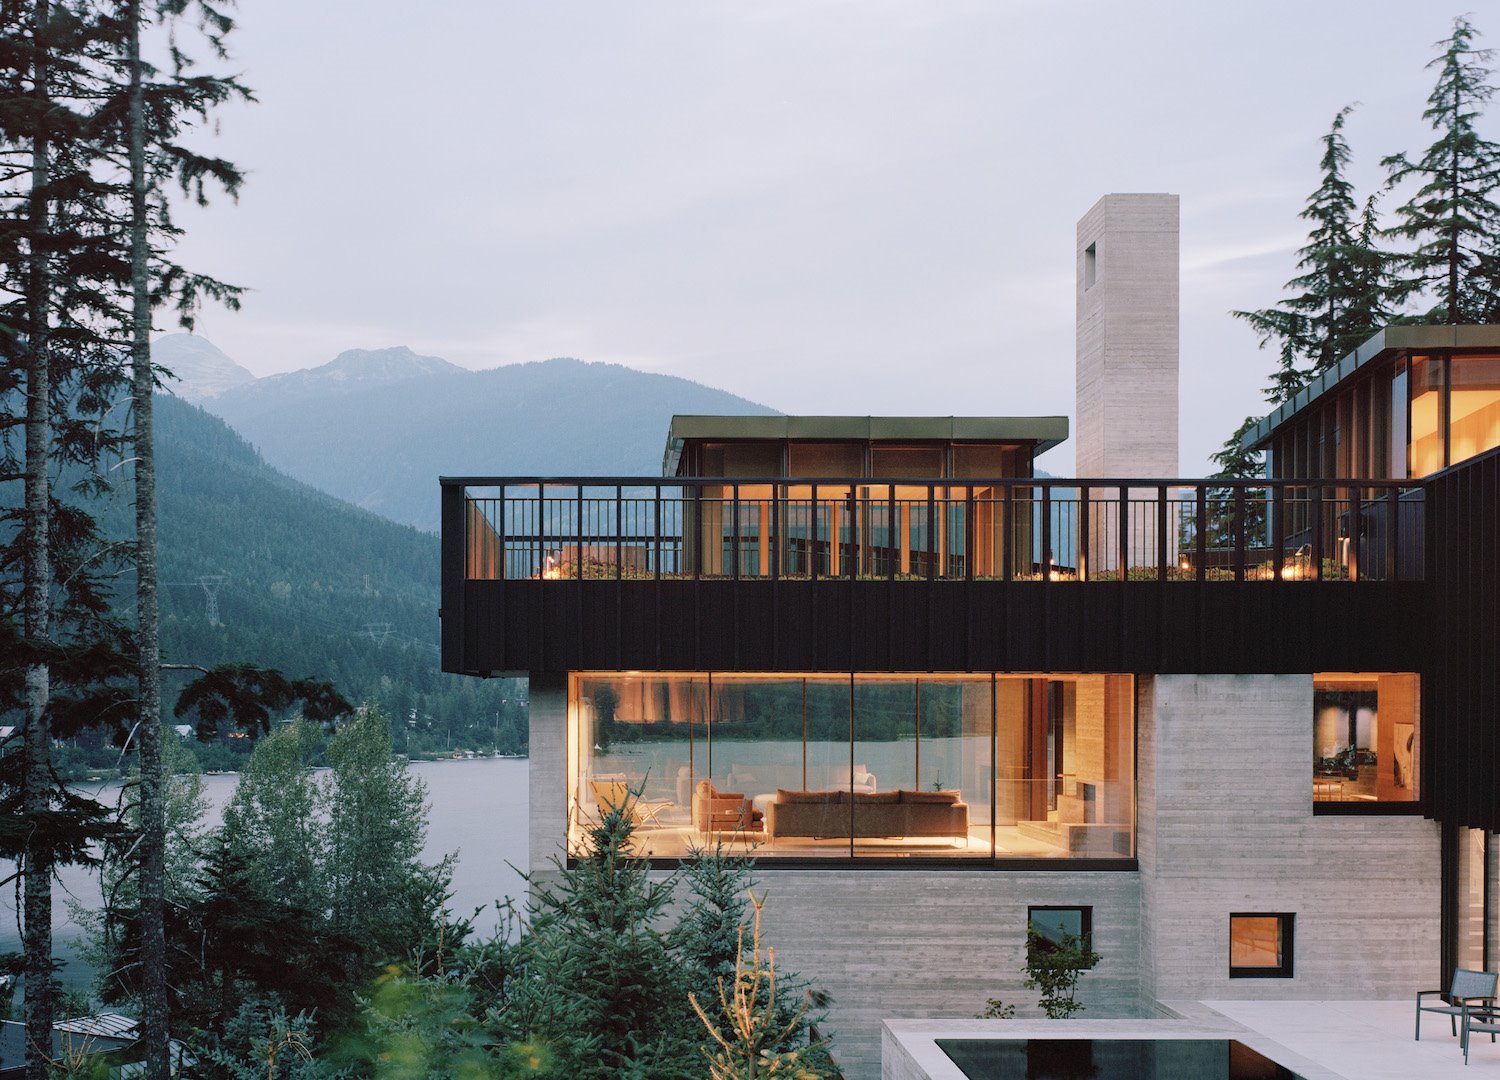 casa-moderna-en-los-bosques-de-canada-fachada-iluminada 8053e009 1500x1080